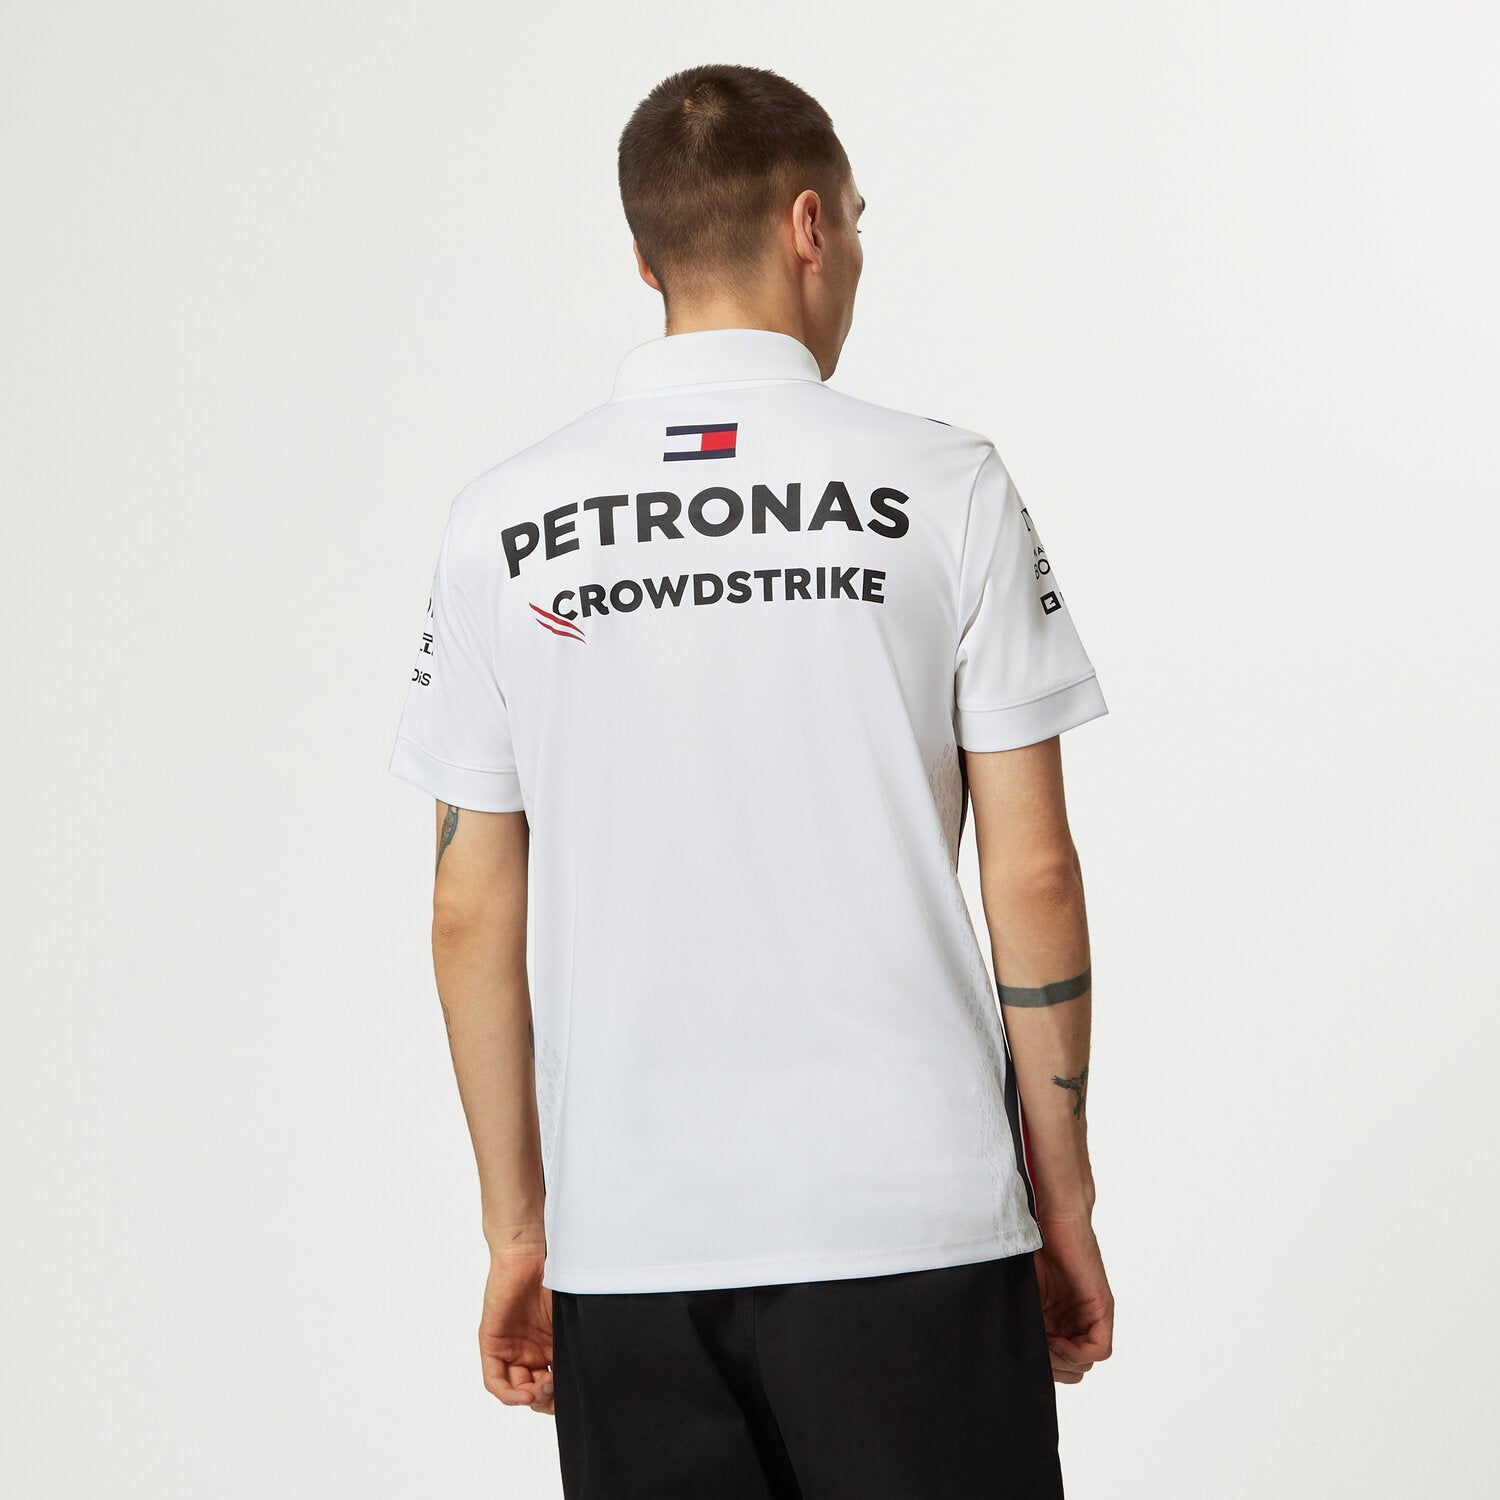 2023 Team Polo - Mercedes-AMG Petronas - Fueler store